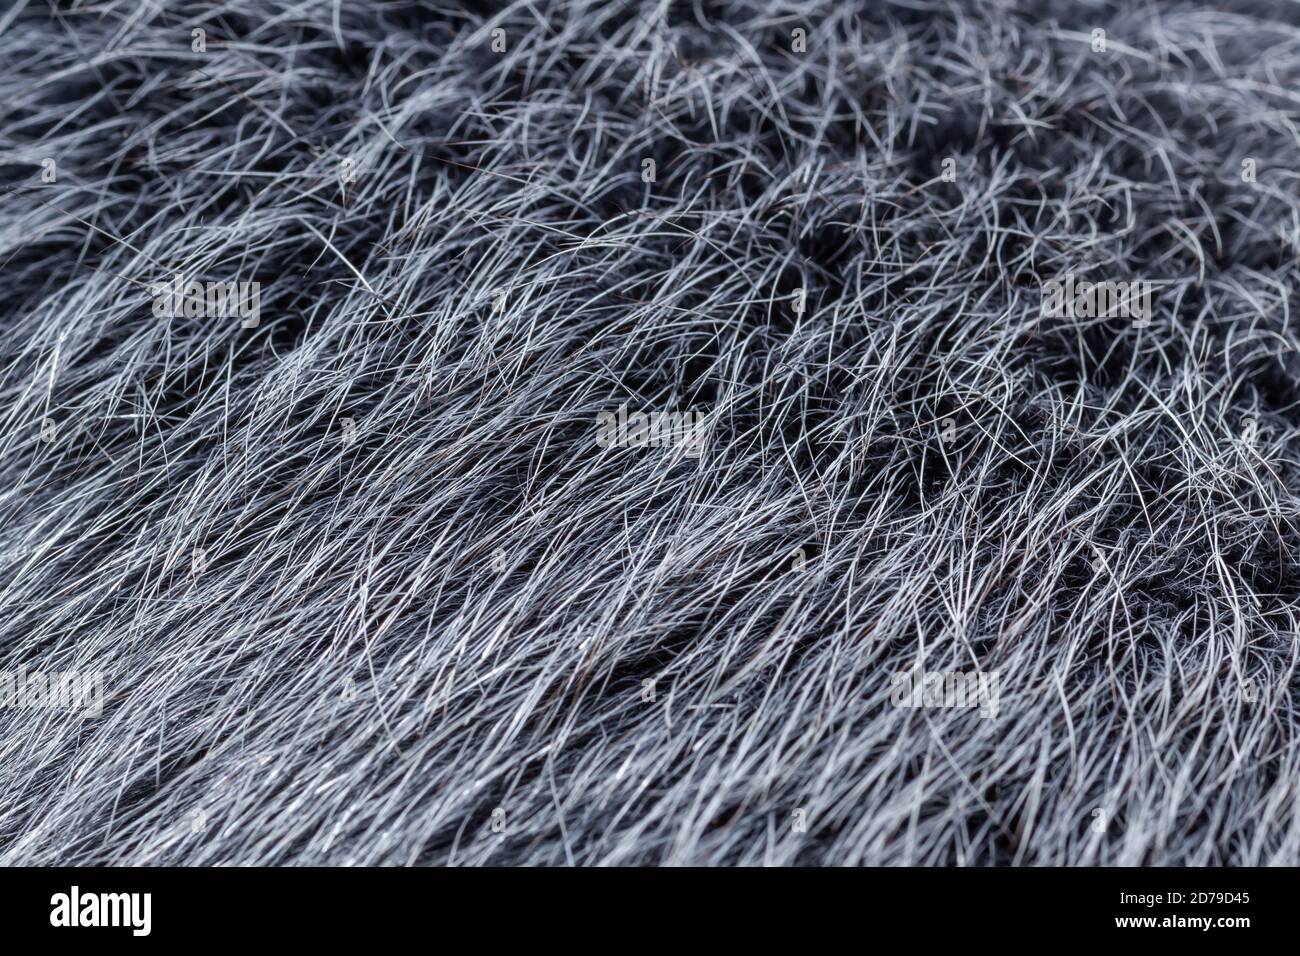 grey fur close-up Stock Photo